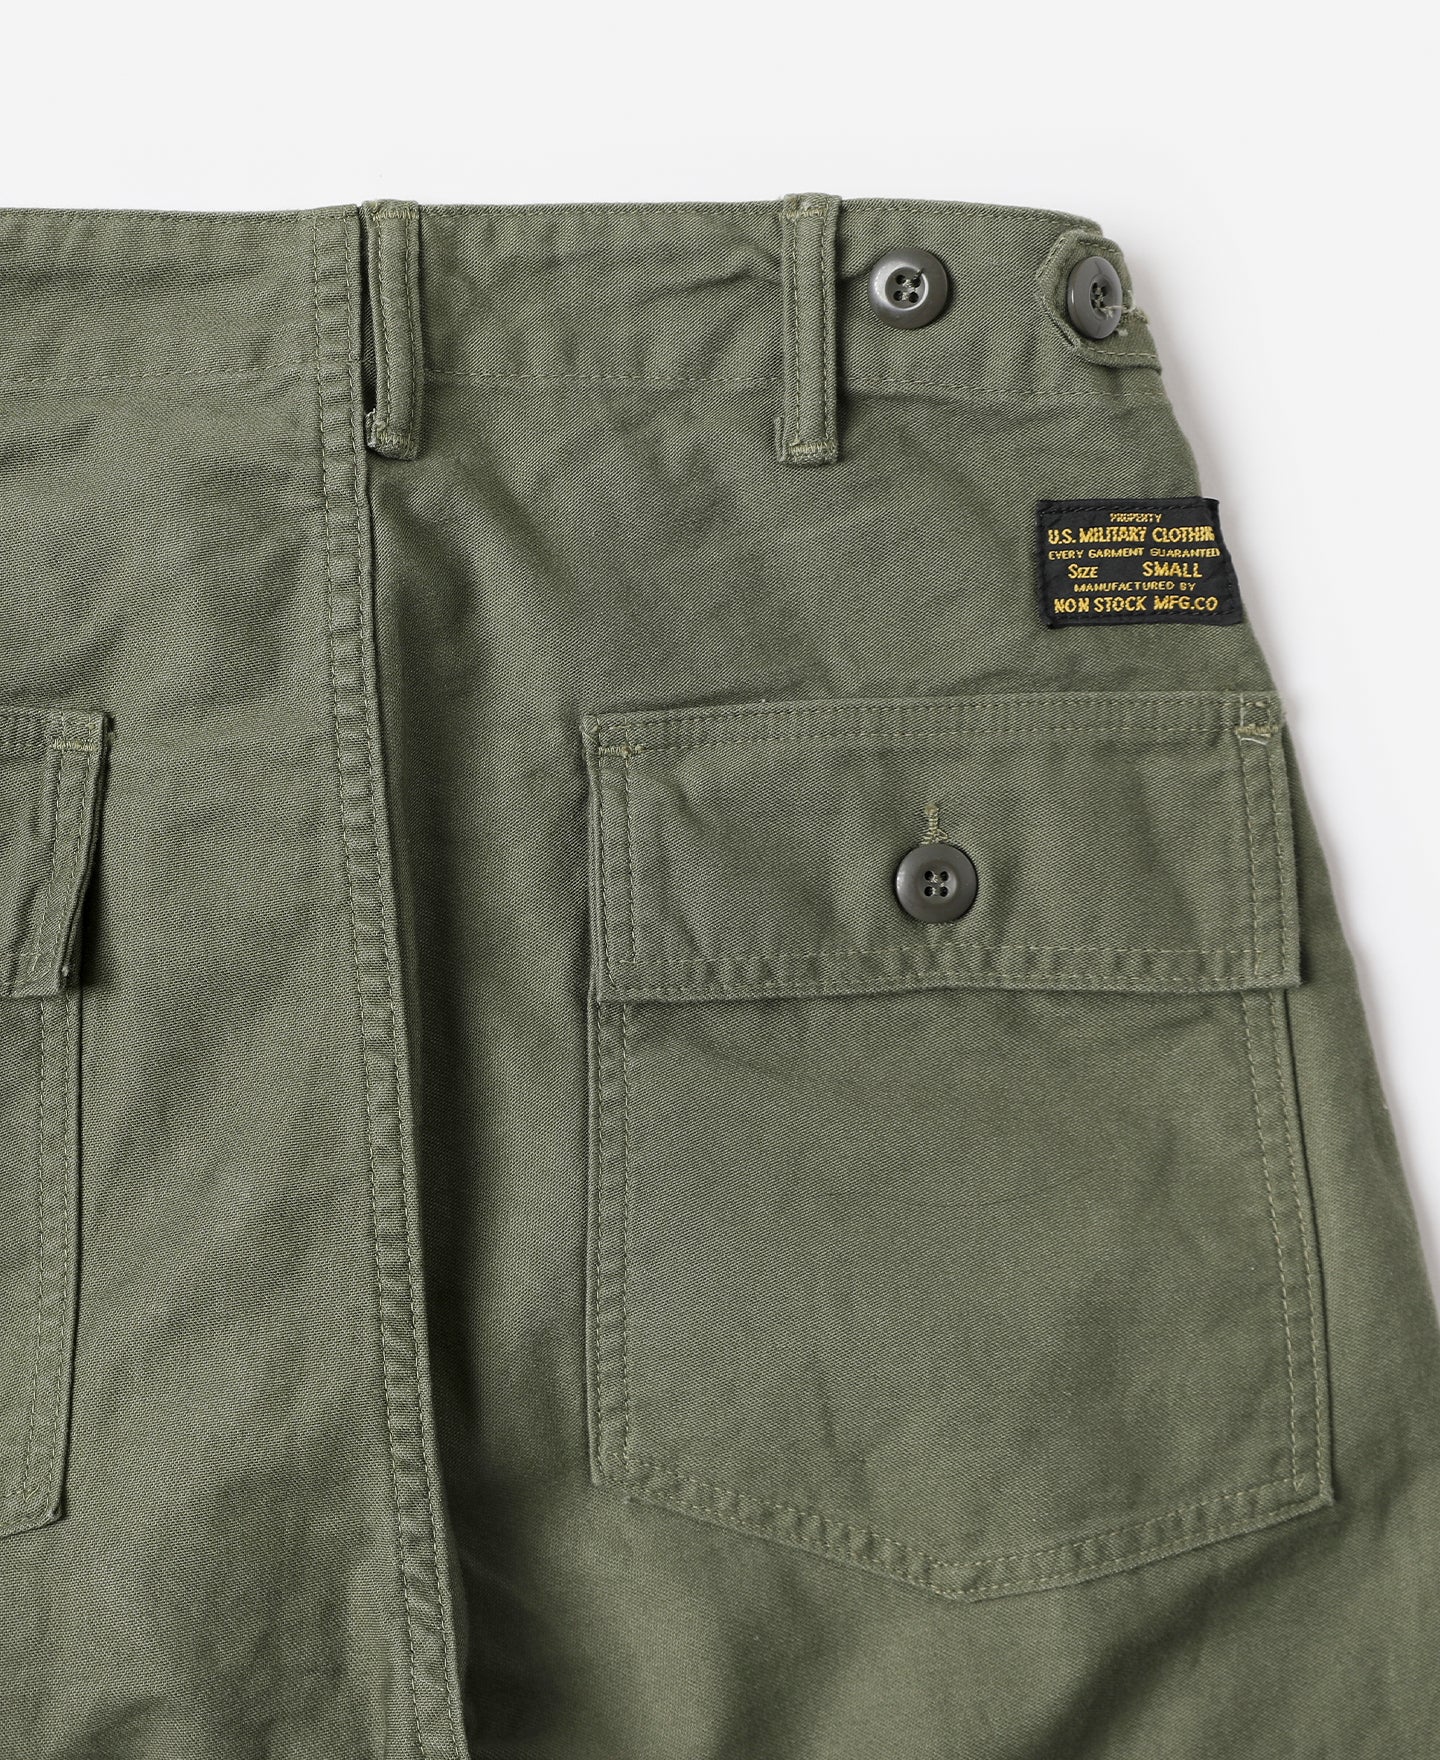 Vietnam War OG-107 Utility Fatigue Pants, Baker Trousers